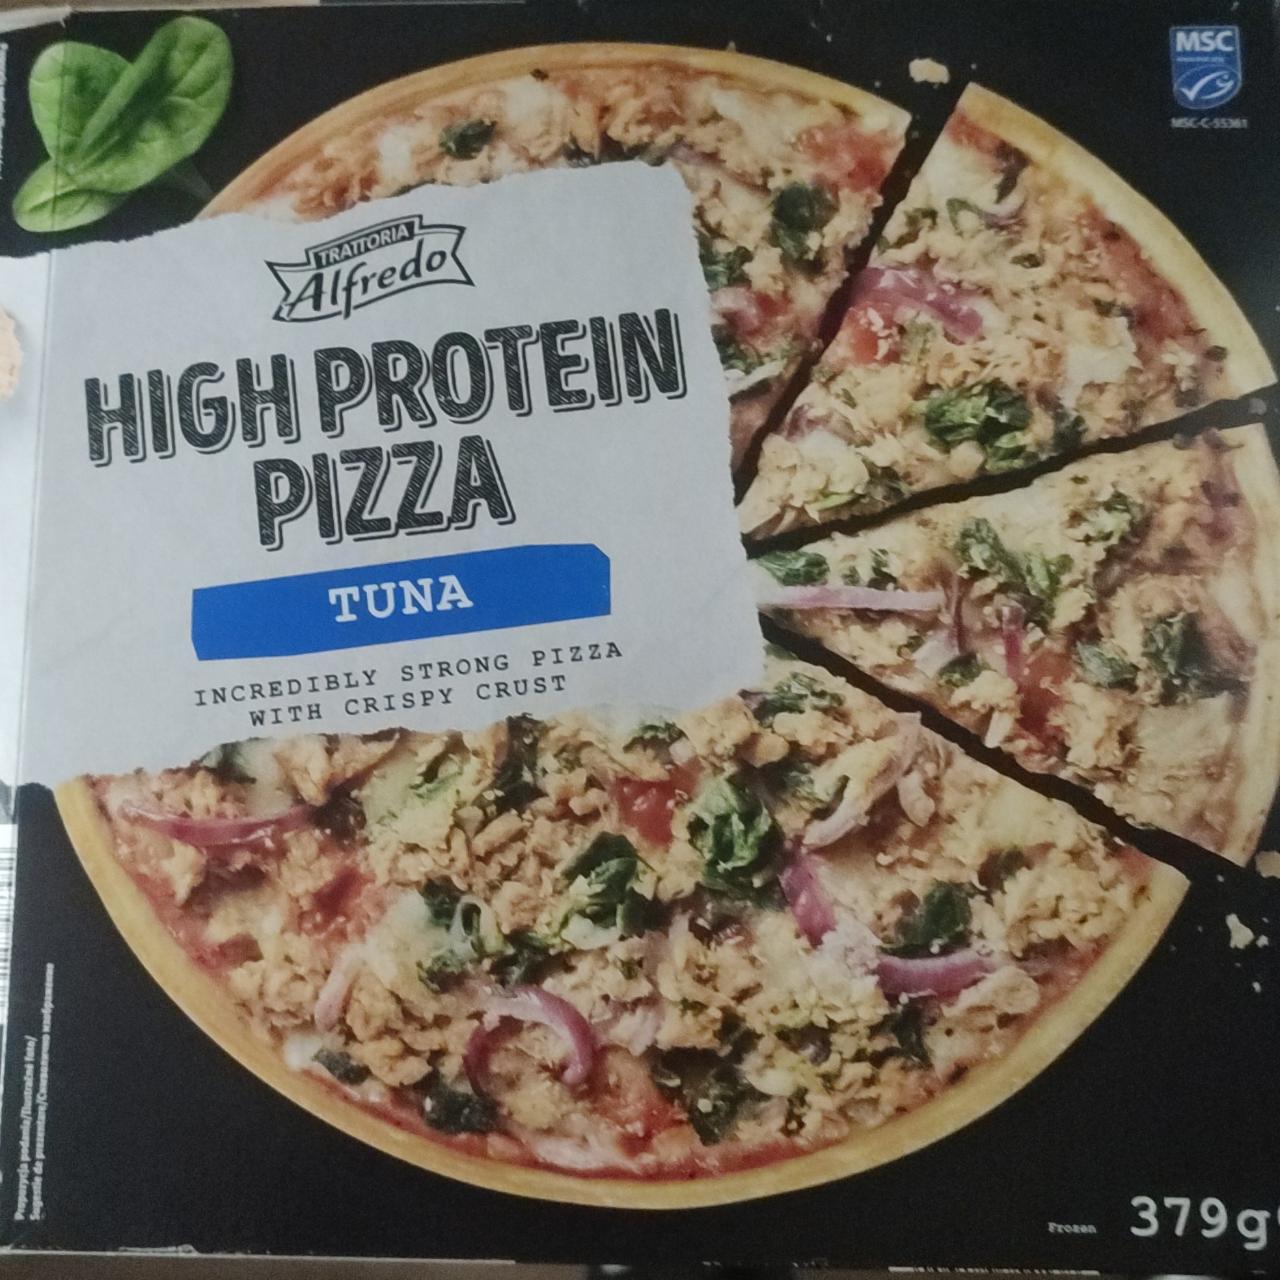 Fotografie - High Protein Pizza Tuna Trattoria Alfredo